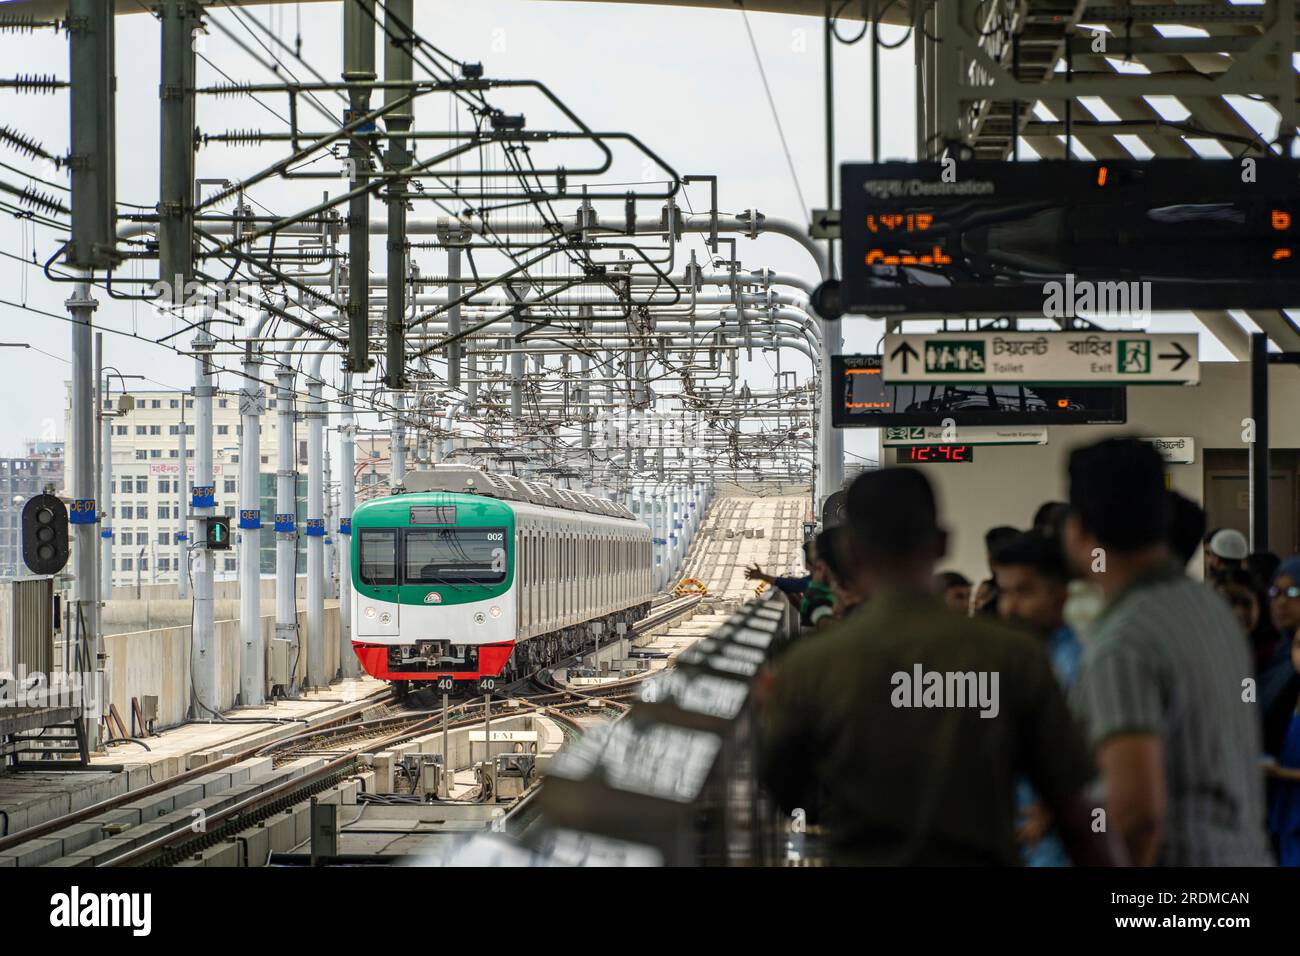 19 luglio 2023, Dhaka, Dhaka, Bangladesh: La Dhaka Metro Rail è un sistema di trasporto rapido di massa che serve Dhaka, la capitale del Bangladesh. È di proprietà e gestita dalla Dhaka Mass Transit Company Limited. Insieme a un sistema di metropolitana proposto, si prevede di ridurre la congestione del traffico in città. Fa parte del piano strategico di trasporto delineato dall'autorità di coordinamento dei trasporti di Dacca.il Bangladesh è il terzo paese dell'Asia meridionale a gestire un servizio di metropolitana-ferrovia - essendo un inizio tardivo nella costosa e complicata impresa rispetto alla vicina India che ha ottenuto la sua prima metropolitana c Foto Stock